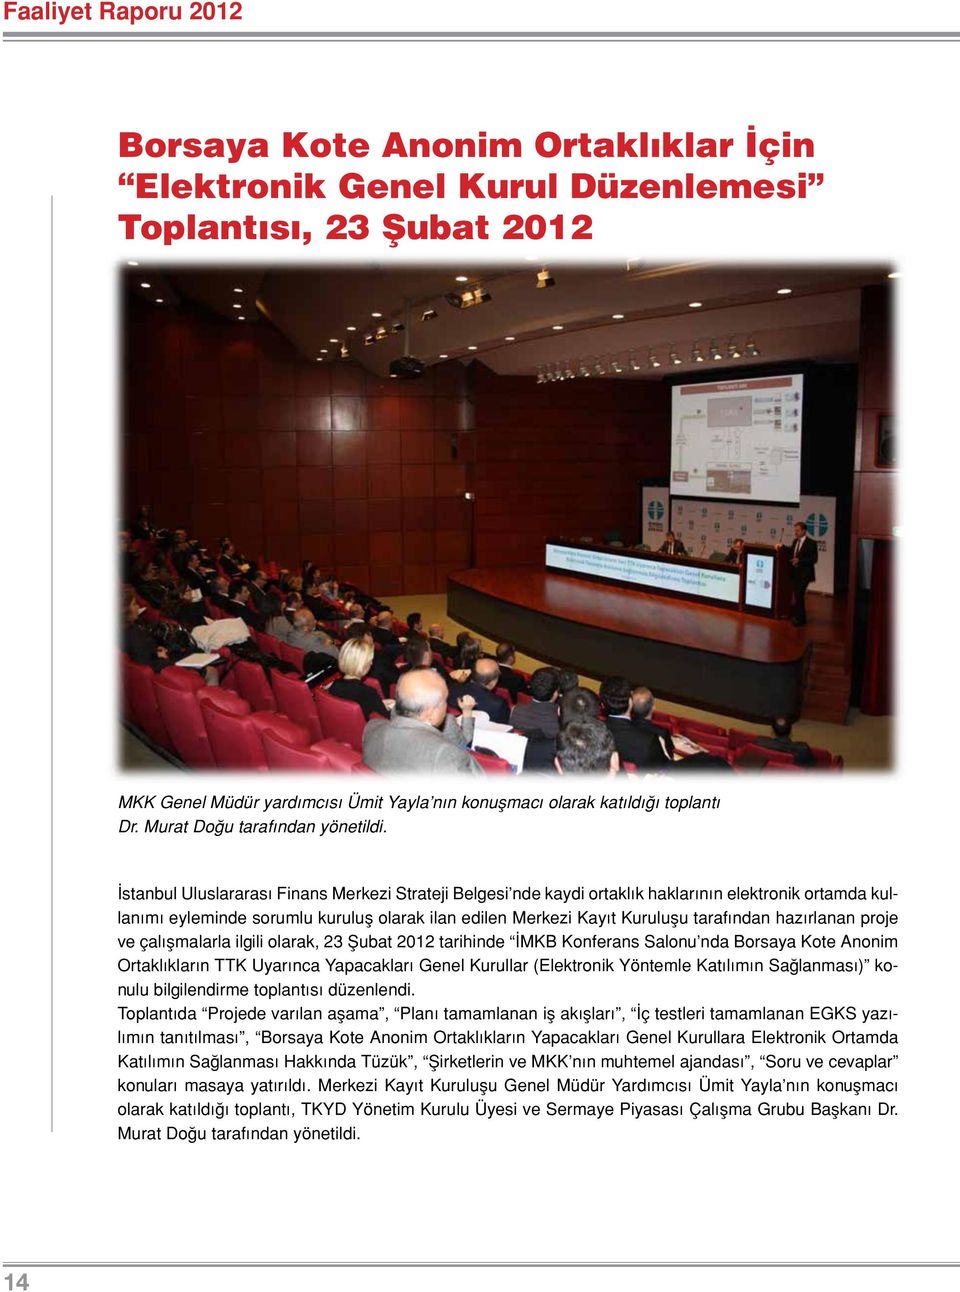 İstanbul Uluslararası Finans Merkezi Strateji Belgesi nde kaydi ortaklık haklarının elektronik ortamda kullanımı eyleminde sorumlu kuruluş olarak ilan edilen Merkezi Kayıt Kuruluşu tarafından